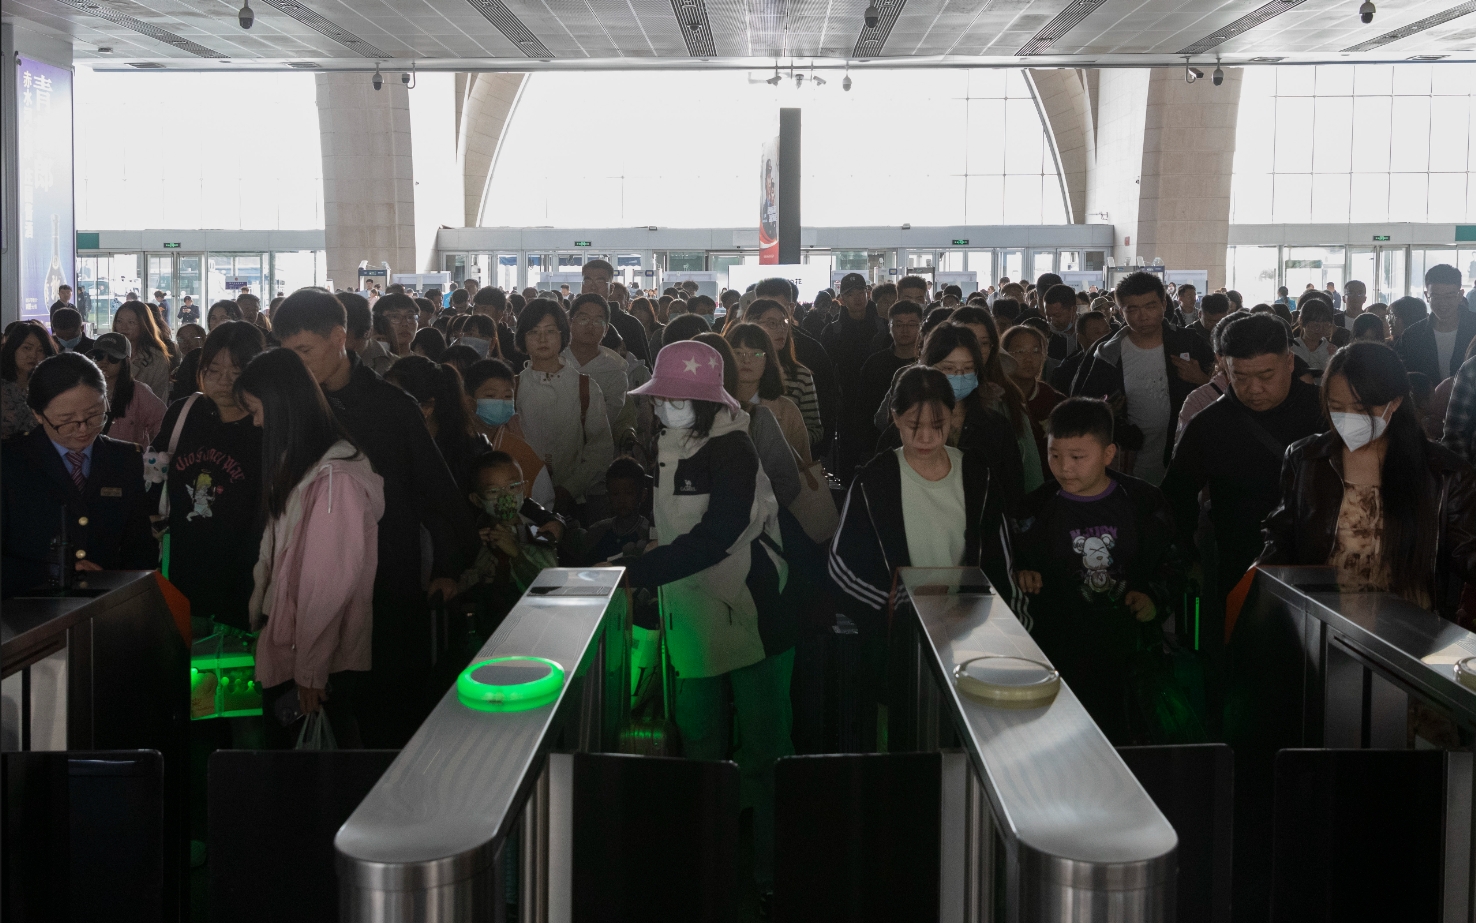 中国铁路客流保持高位运行  3日预计发送旅客1635万人次